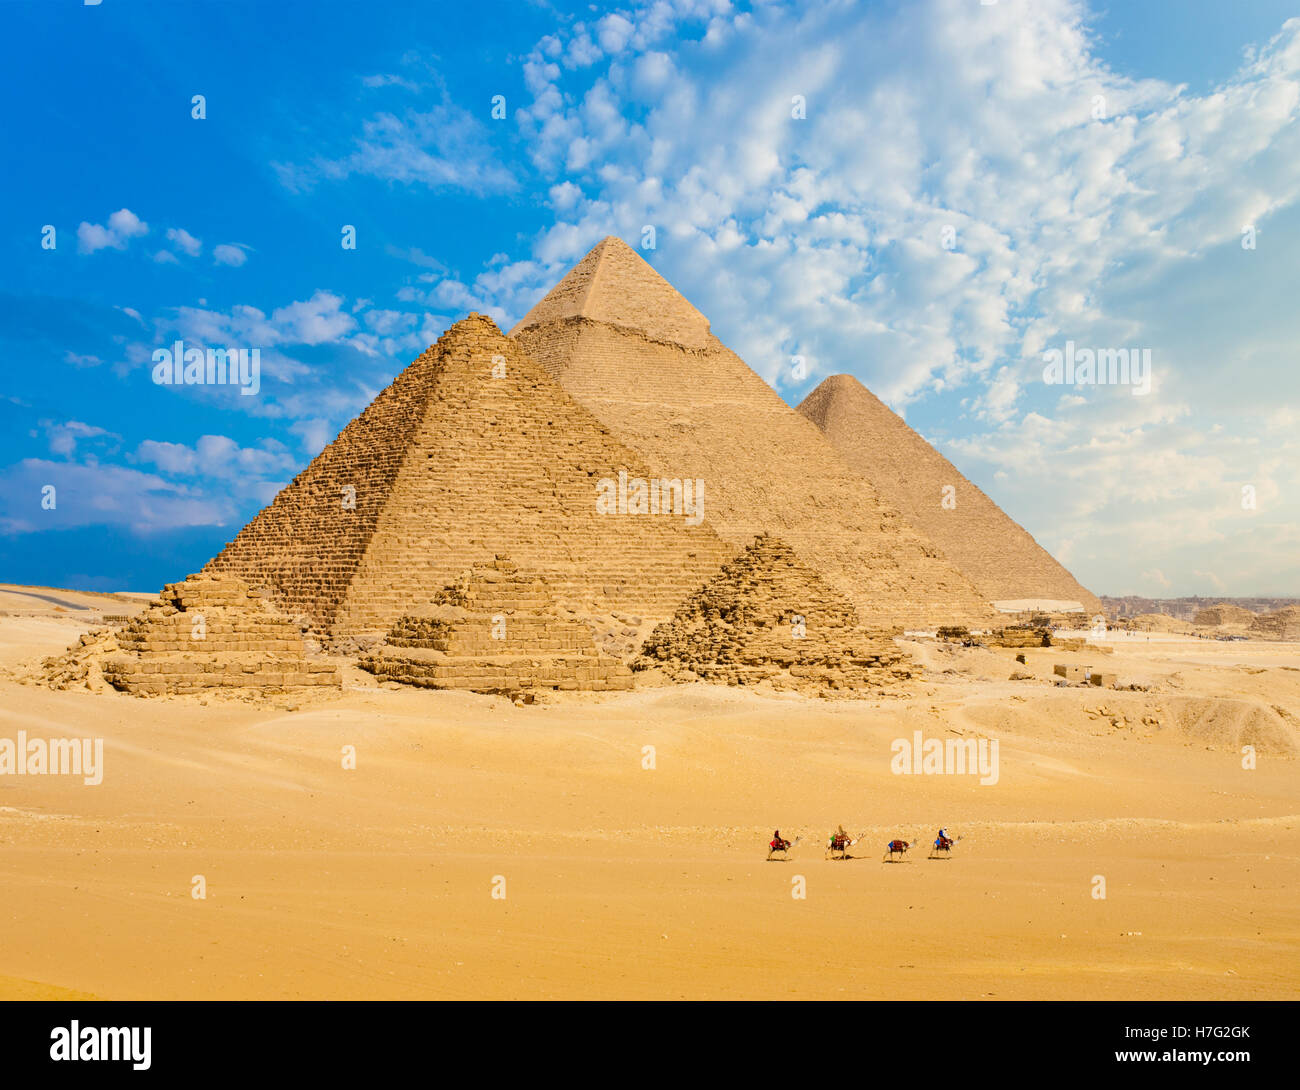 Tous les pyramides égyptiennes de distance avec rangée de chameaux marcher en premier plan dans la région de Giza, Le Caire, Égypte. Téléobjectif large copy space Banque D'Images